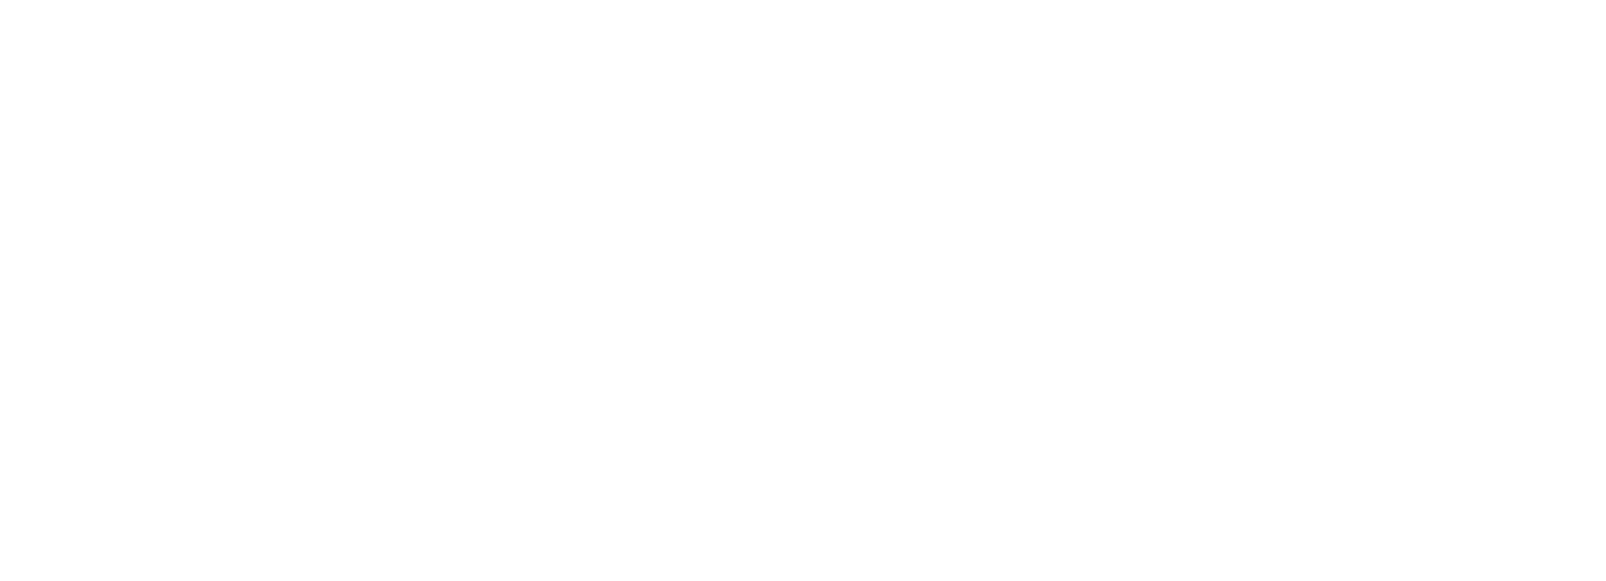 Cian logo grand pour les fonds sombres (PNG transparent)